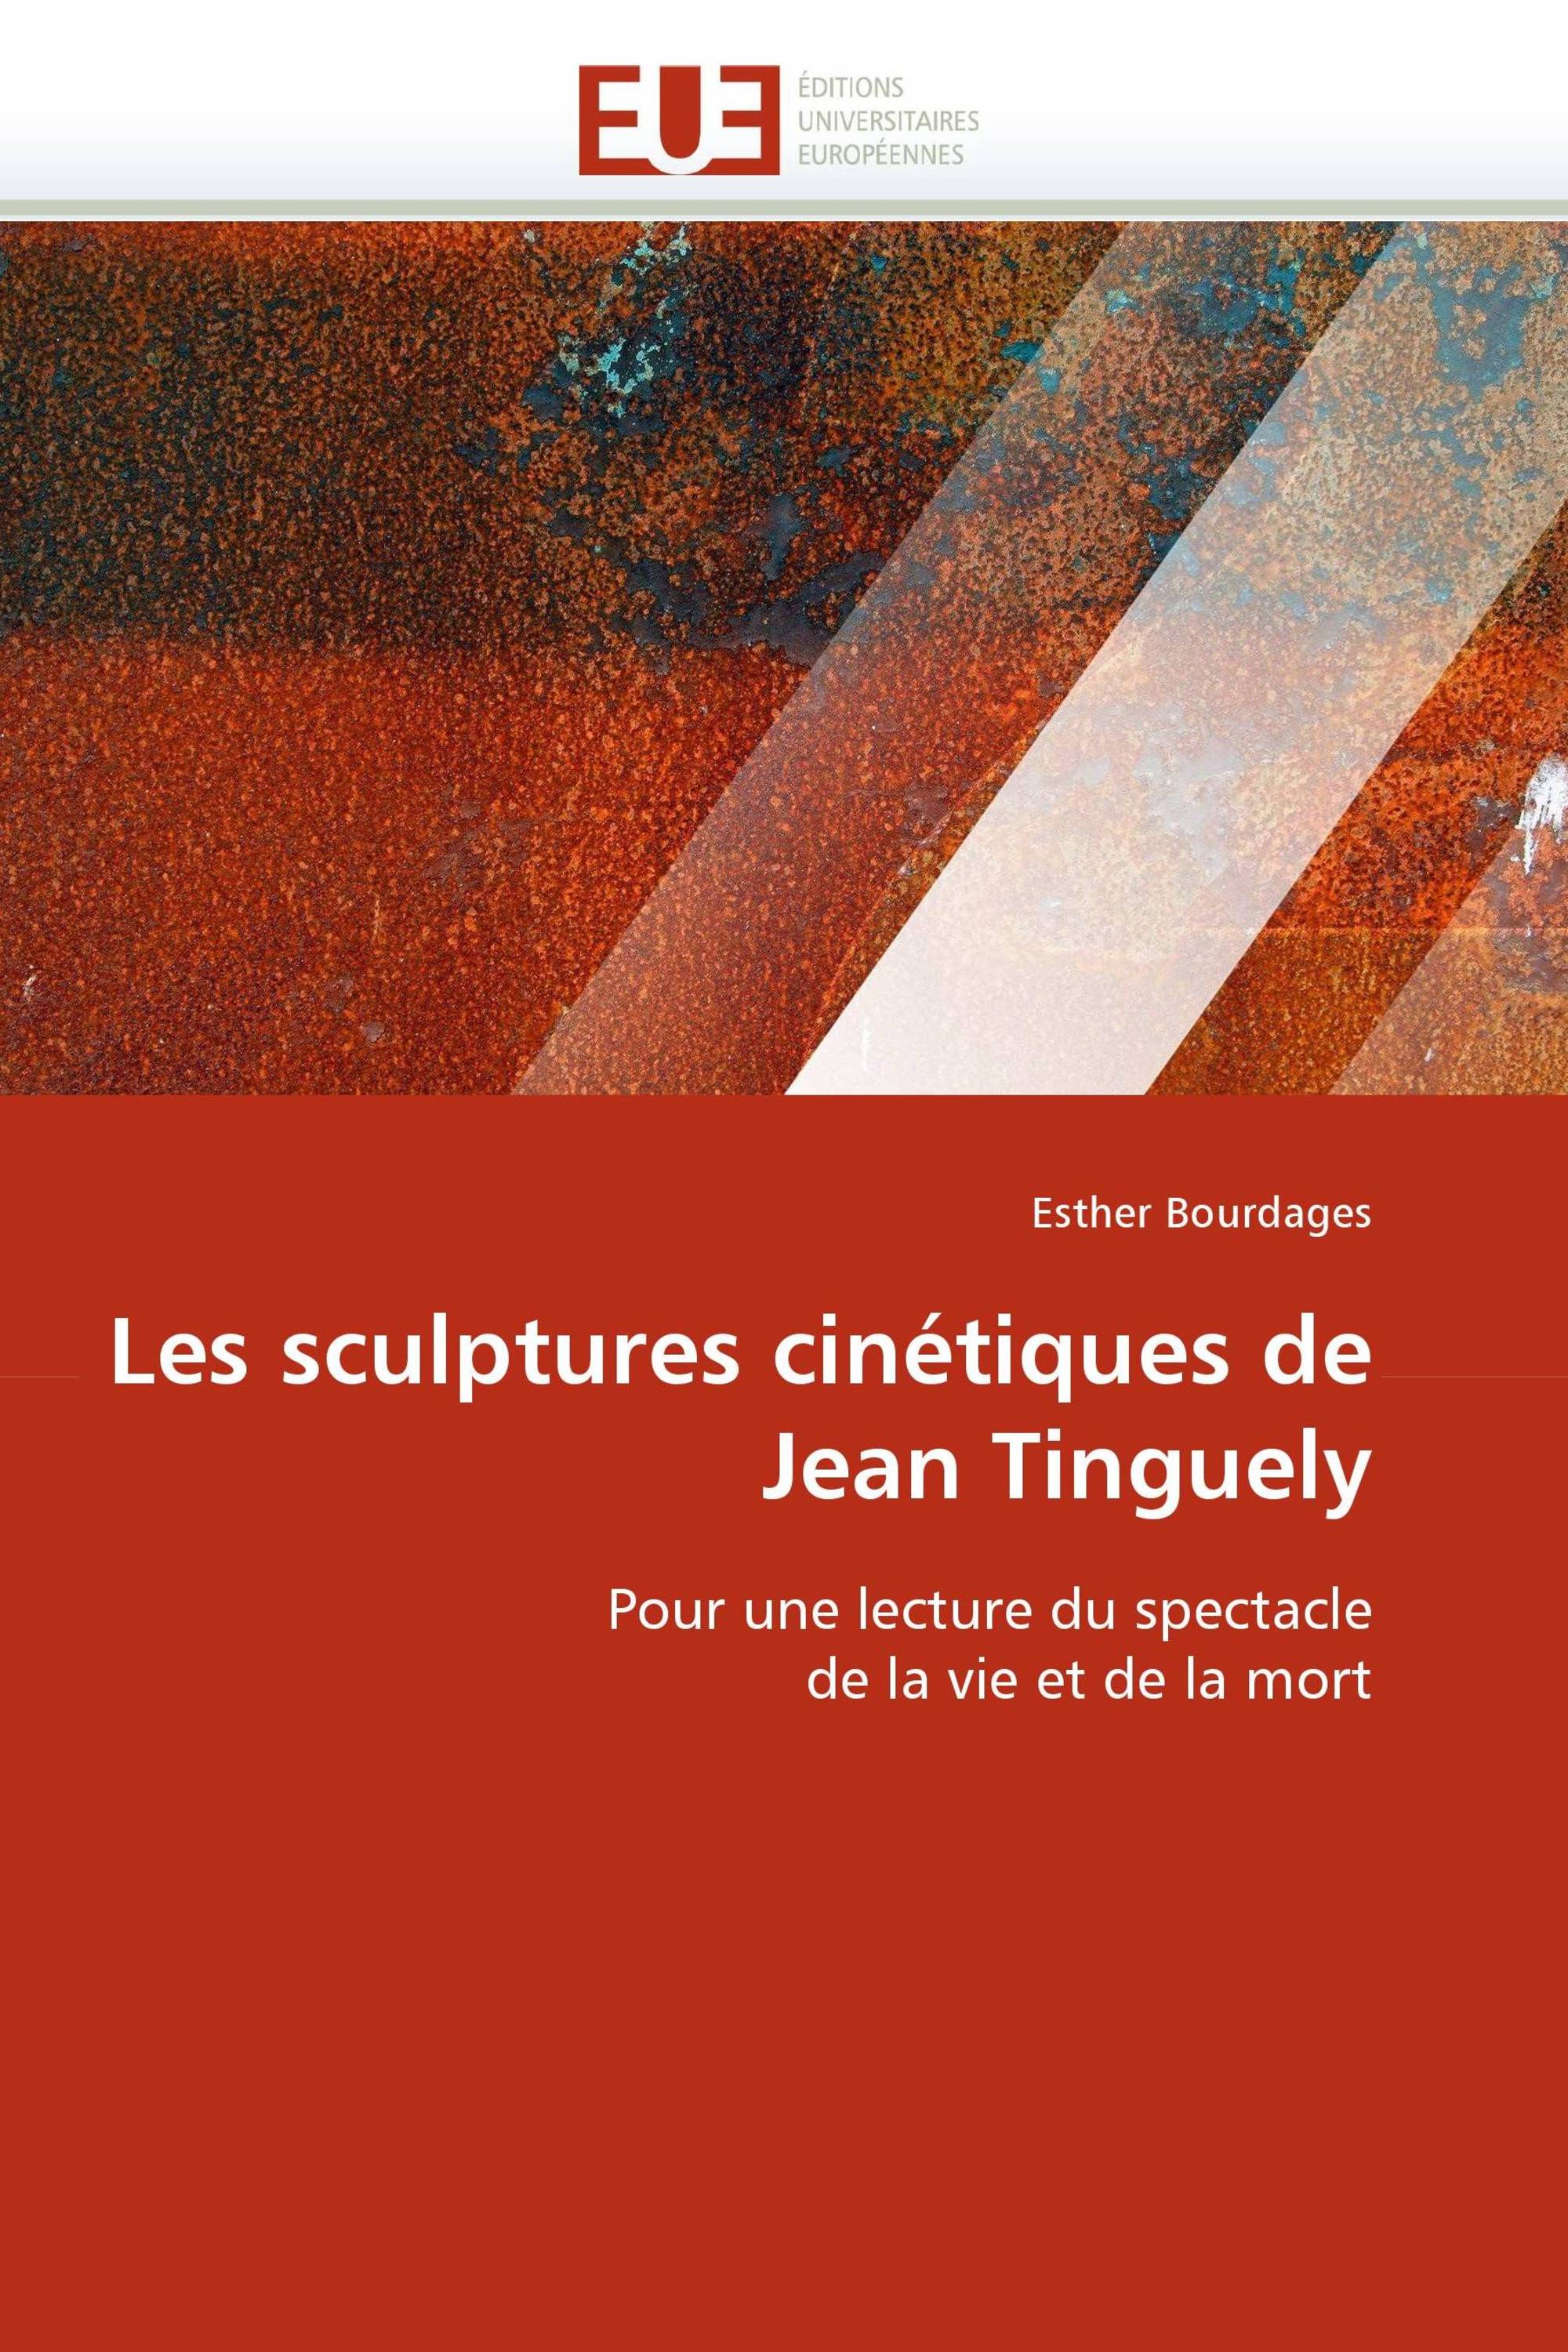 Les sculptures cinétiques de Jean Tinguely